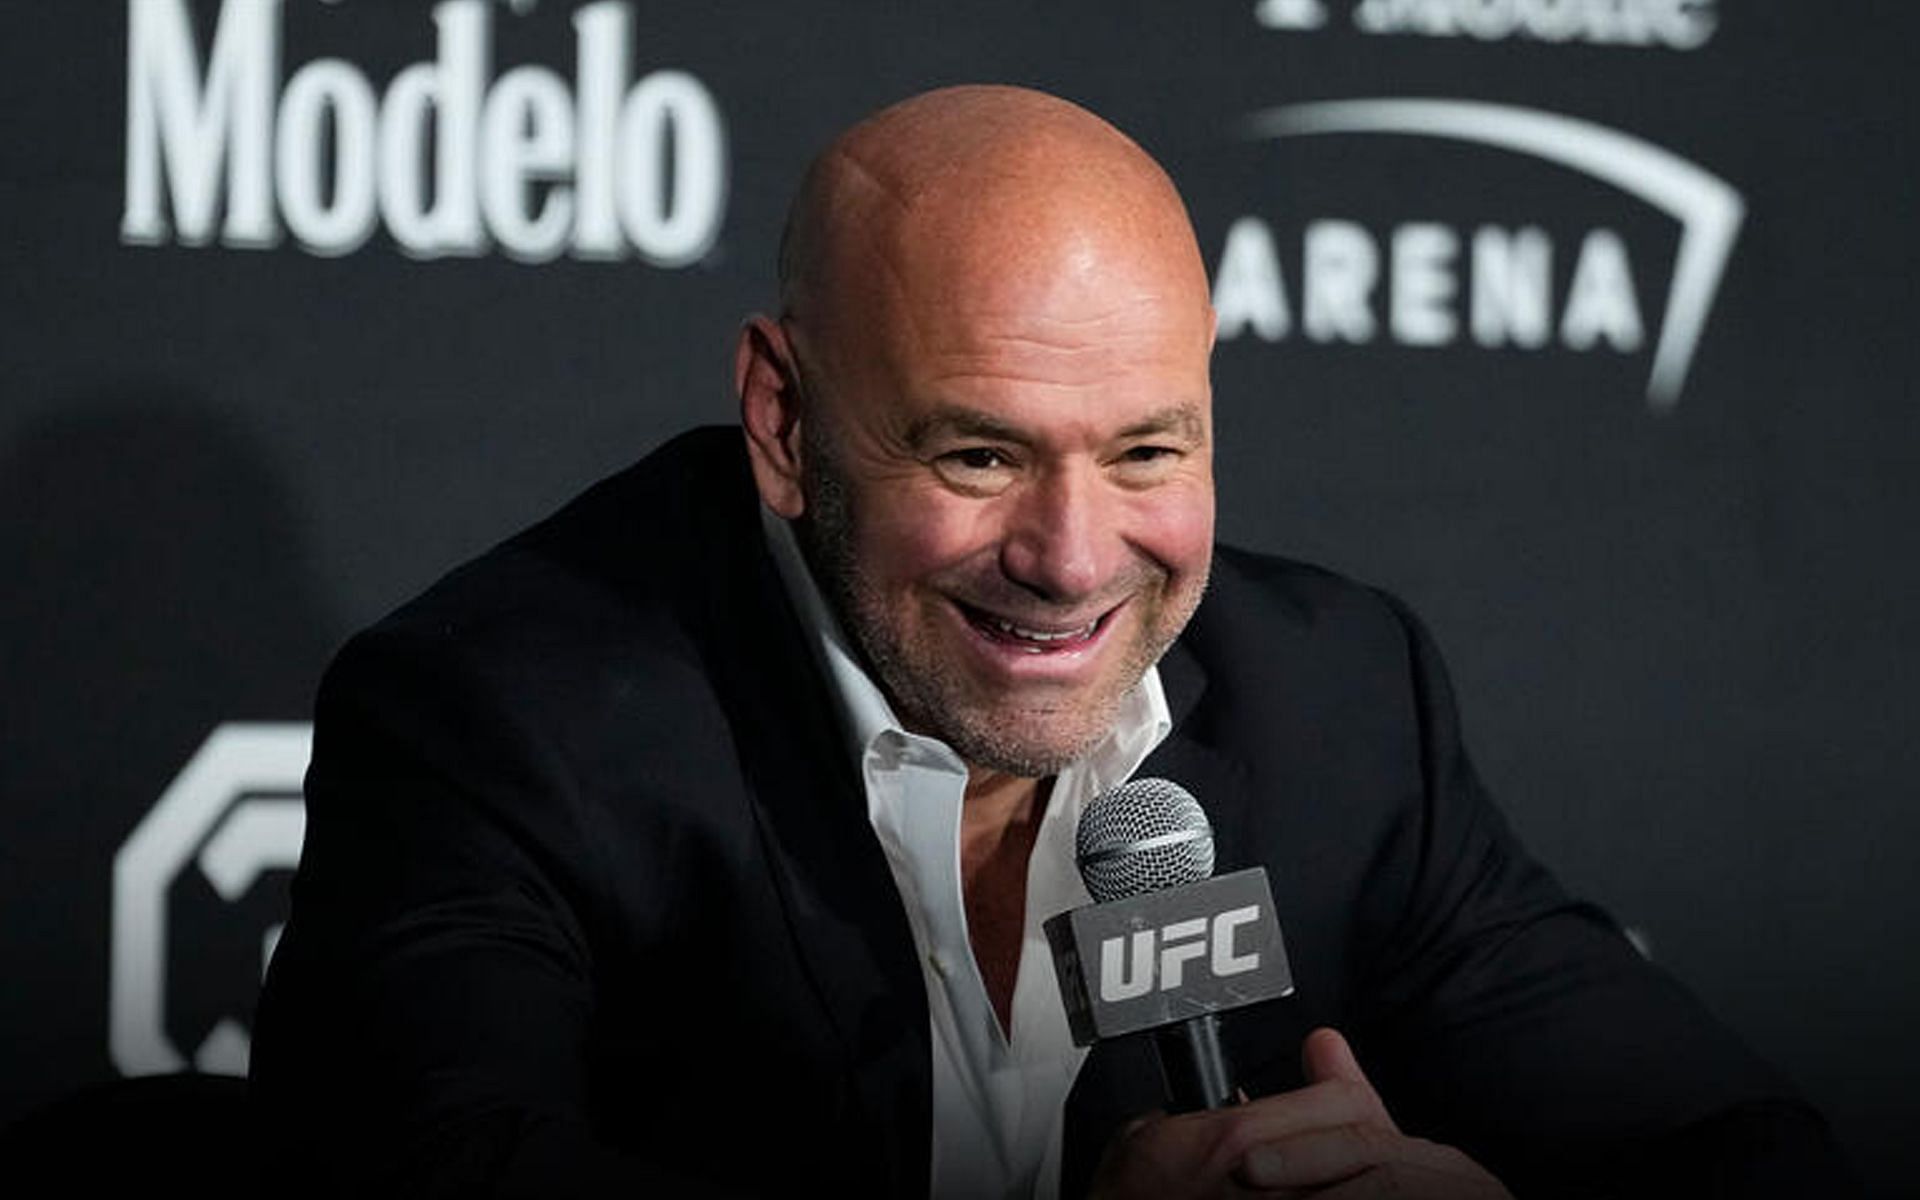 Dana White will remain the CEO of the UFC [Image via ufc.com]